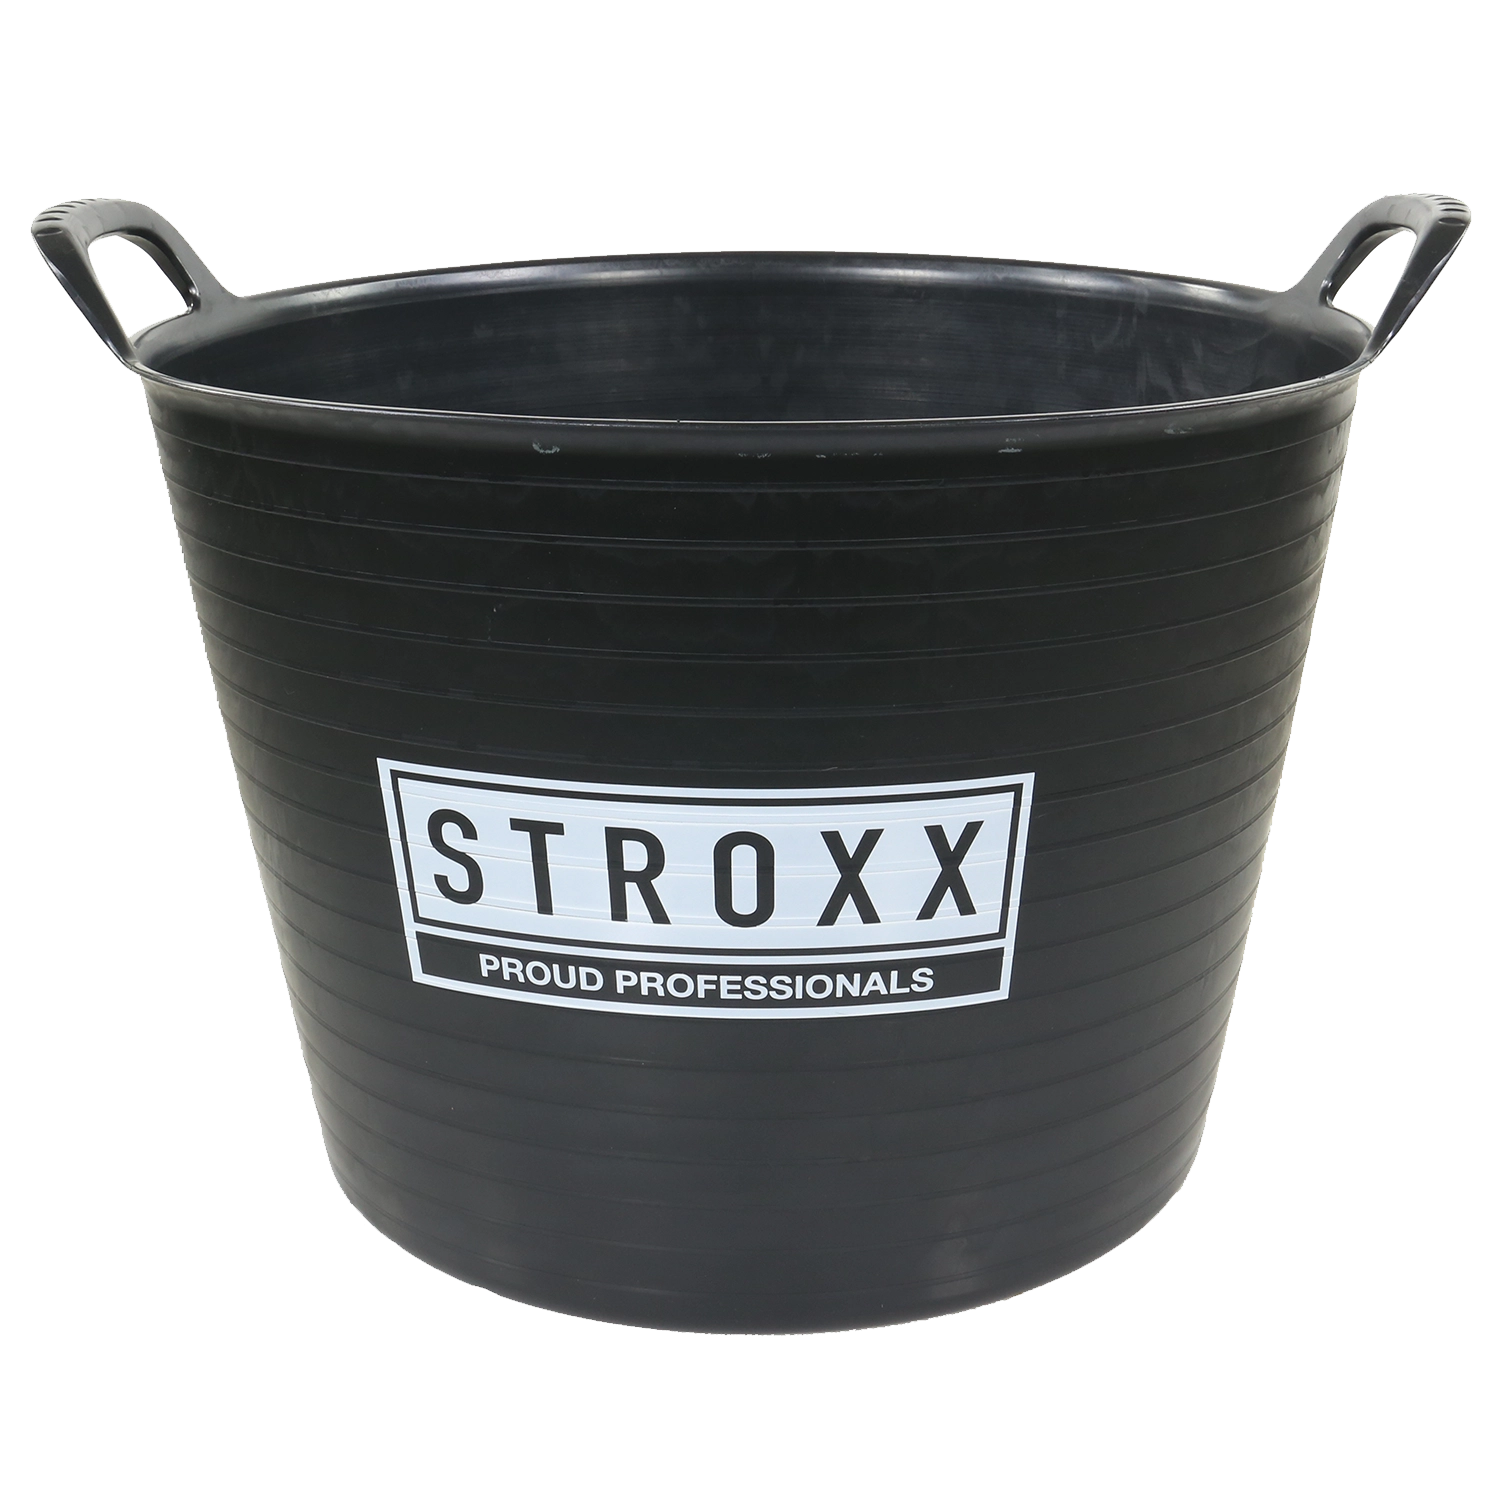 STROXX Tub Flexible 25L: Grijze flexibele emmer van 25 liter met Handgrepen en een glad oppervlak.